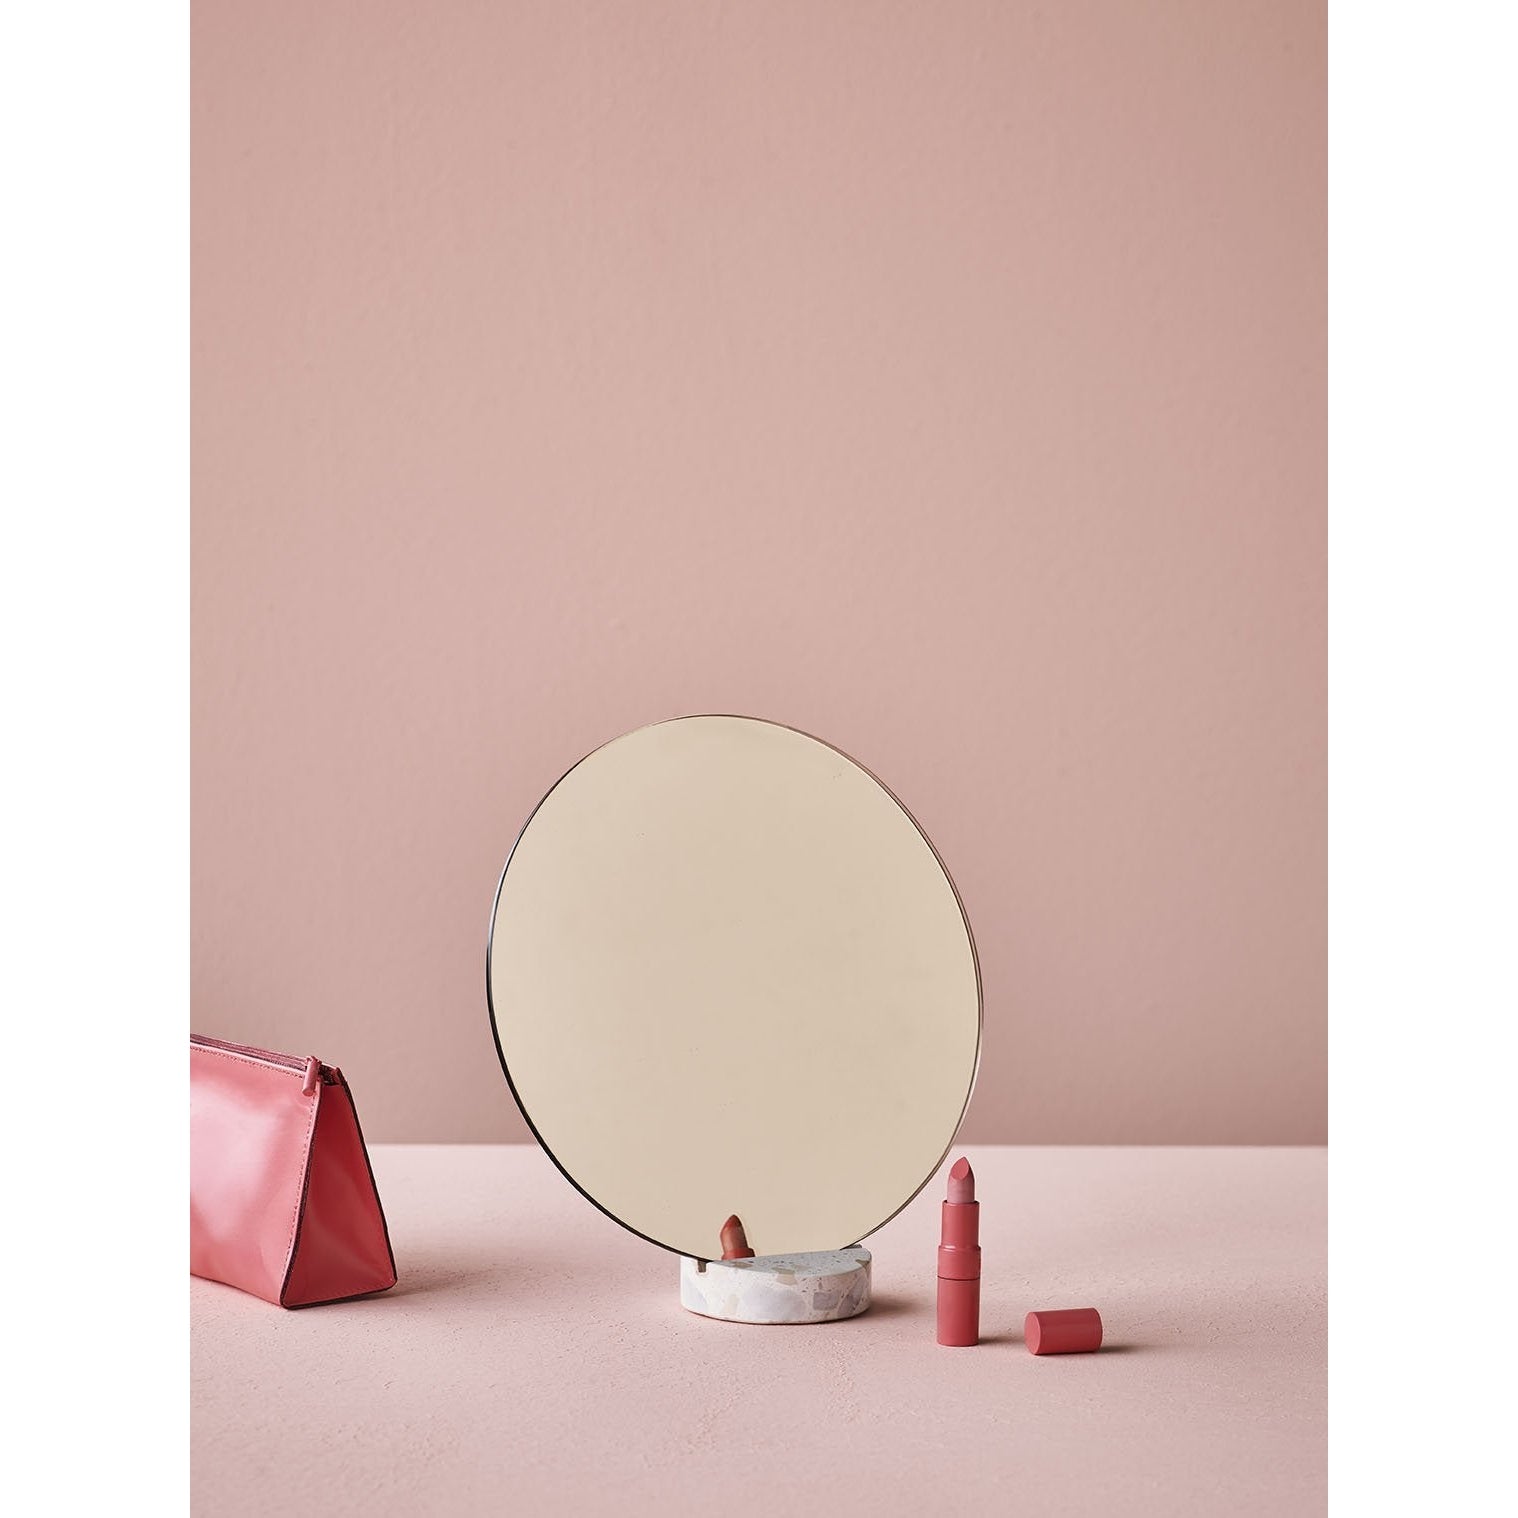 Lucie Kaas Erat Mirror Pink, Ø 25 cm